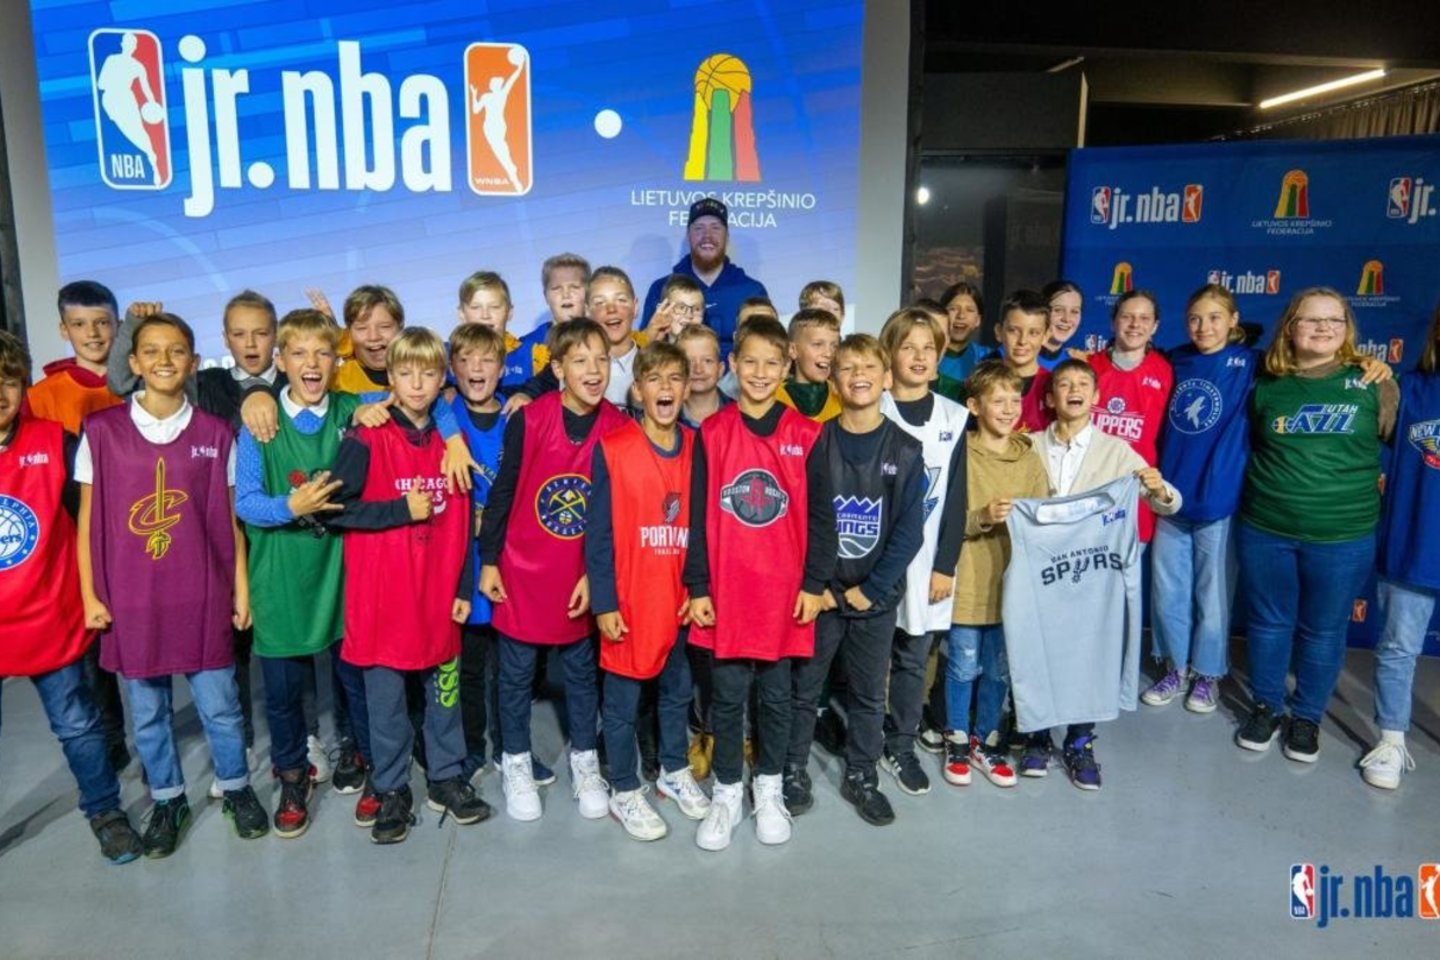  Po pertraukos į Lietuvą sugrįžta „Jr. NBA League“ projektas<br> LKF nuotr.